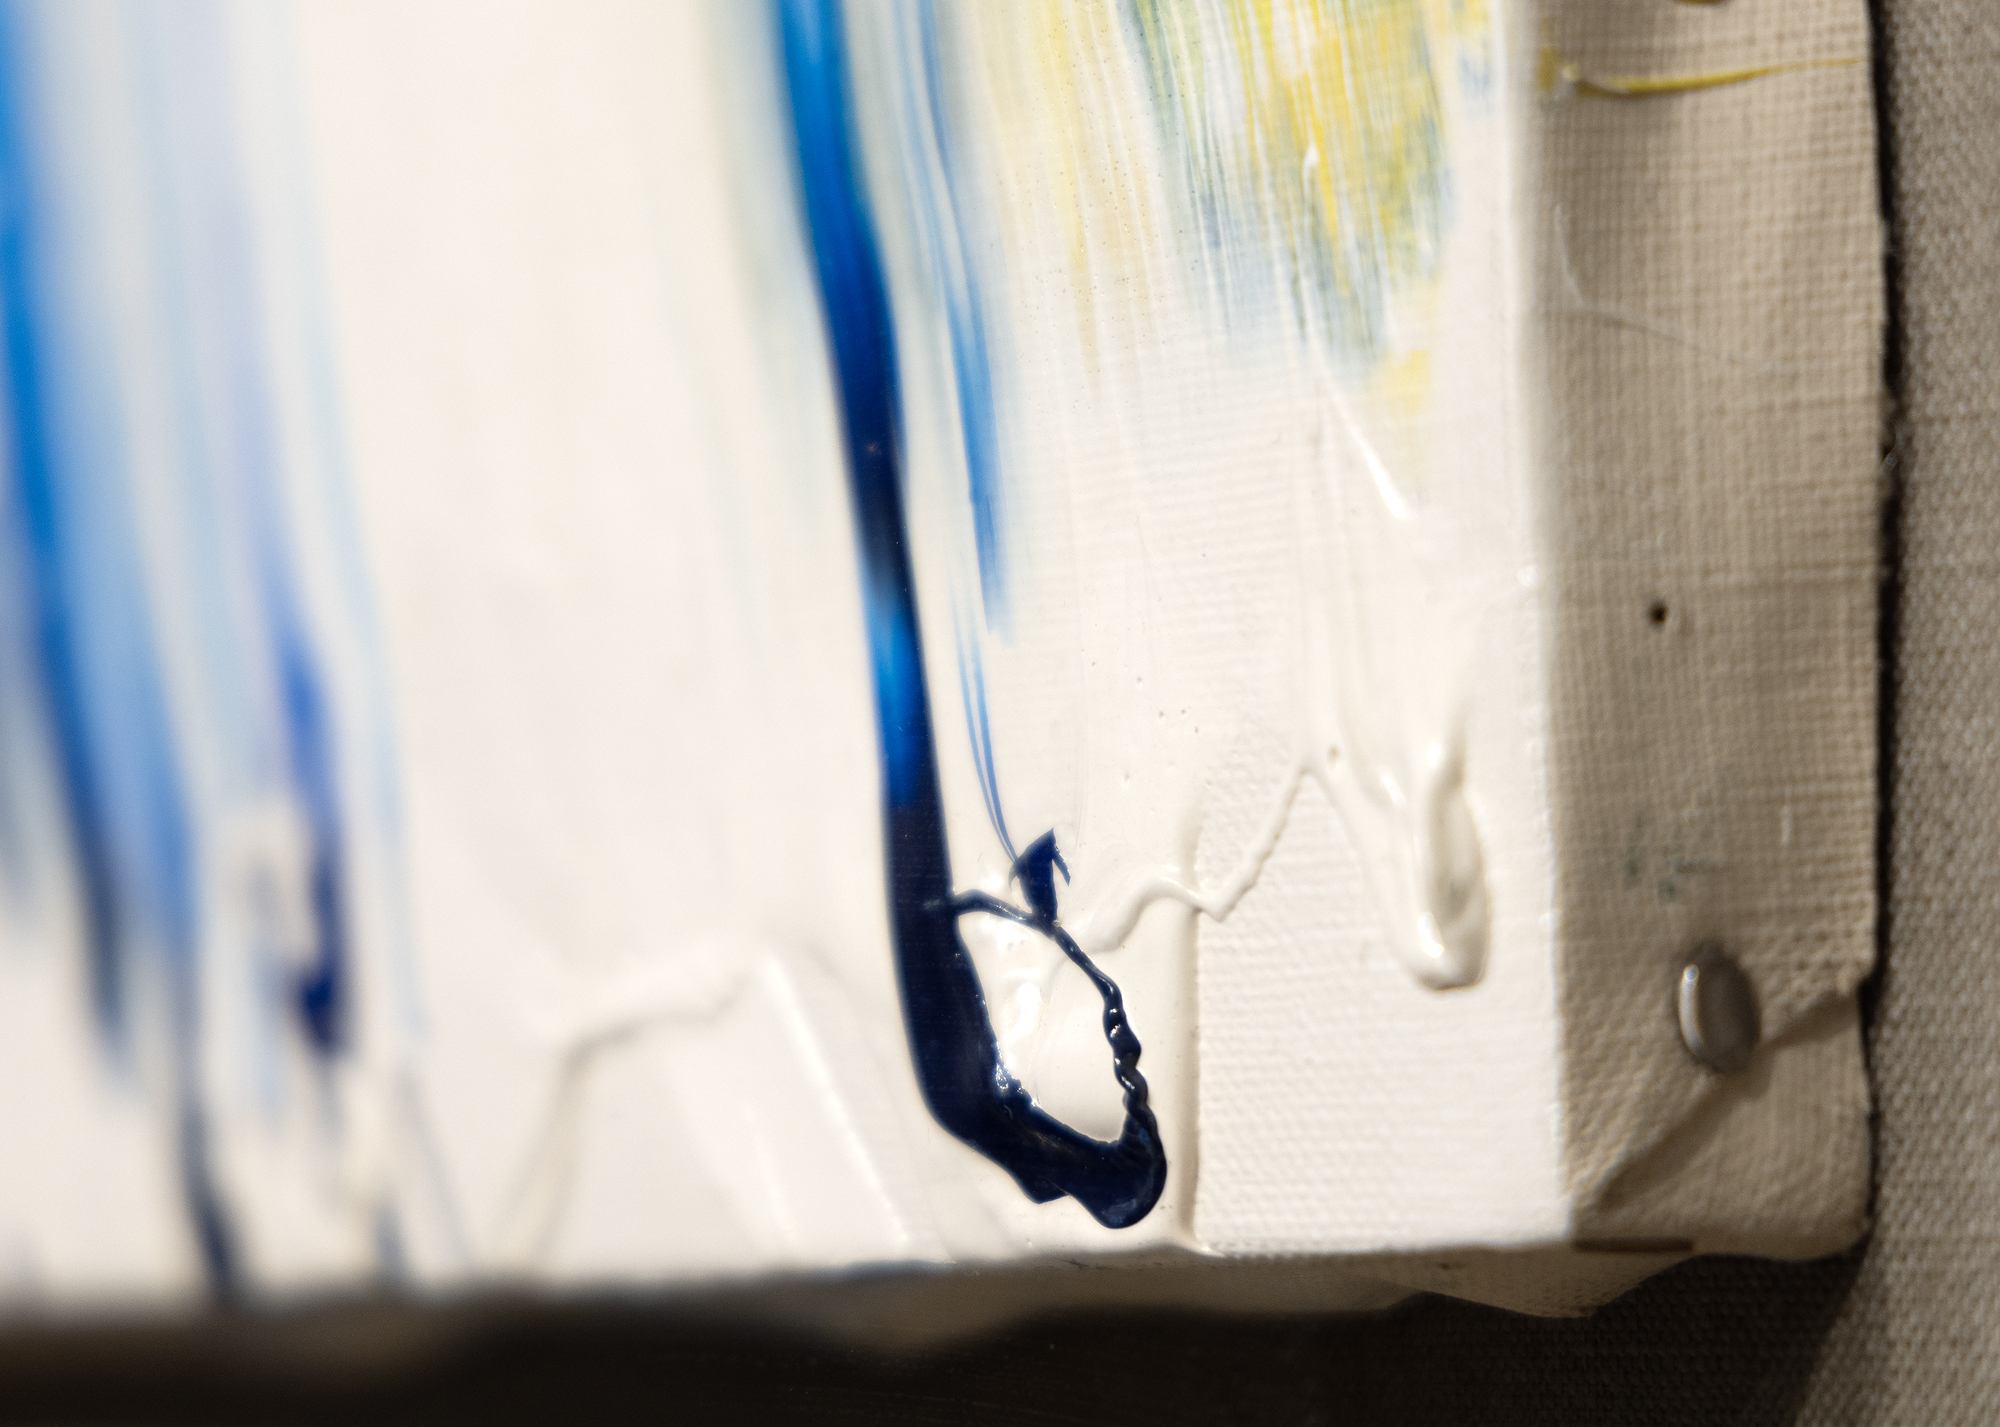 Entre el grupo Gutai de artistas japoneses que se formó durante la década de 1950, ninguno trabajaba con tanta rapidez e intrepidez como Kazuo Shiraga. Sus cuadros se caracterizan por sus pinceladas dinámicas y gestuales, a menudo creadas de forma poco convencional. Shiraga era famoso por utilizar su cuerpo como herramienta pictórica, a menudo aplicando pintura al lienzo o al papel con los pies mientras estaba suspendido de una cuerda. Las texturas suelen ser gruesas, pero siempre muy táctiles, con capas de pintura que añaden profundidad y fisicidad a la obra. Por otra parte, Taki se basa en rayas crudas de color abigarrado, evocando una energía desenfrenada y un sentido de libertad y rebelión por el que es conocido, desafiando las convenciones artísticas tradicionales y ampliando los límites de la expresión creativa.